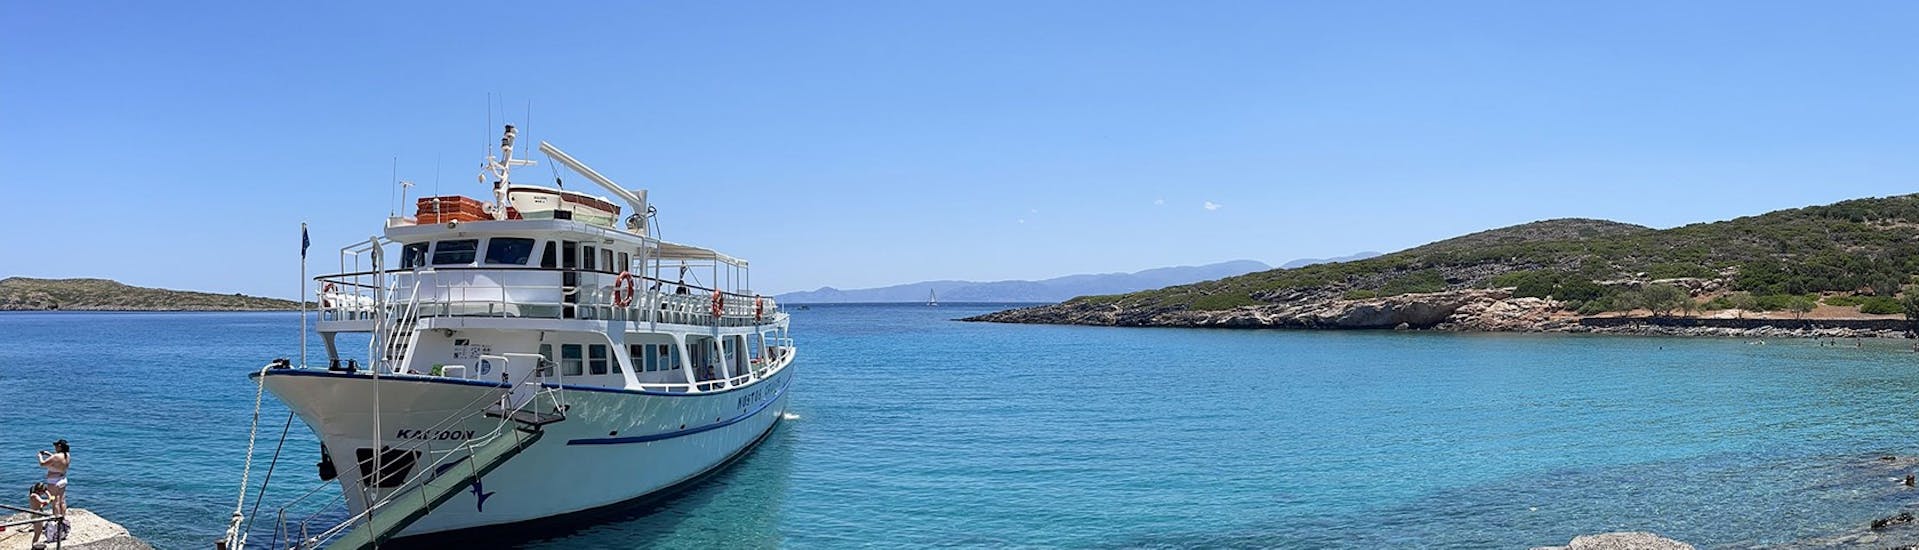 Le bateau est amarré et vous attend pour débuter la Balade en bateau autour du Golfe de Mirabello avec Baignade avec Nostos Cruises Crete.